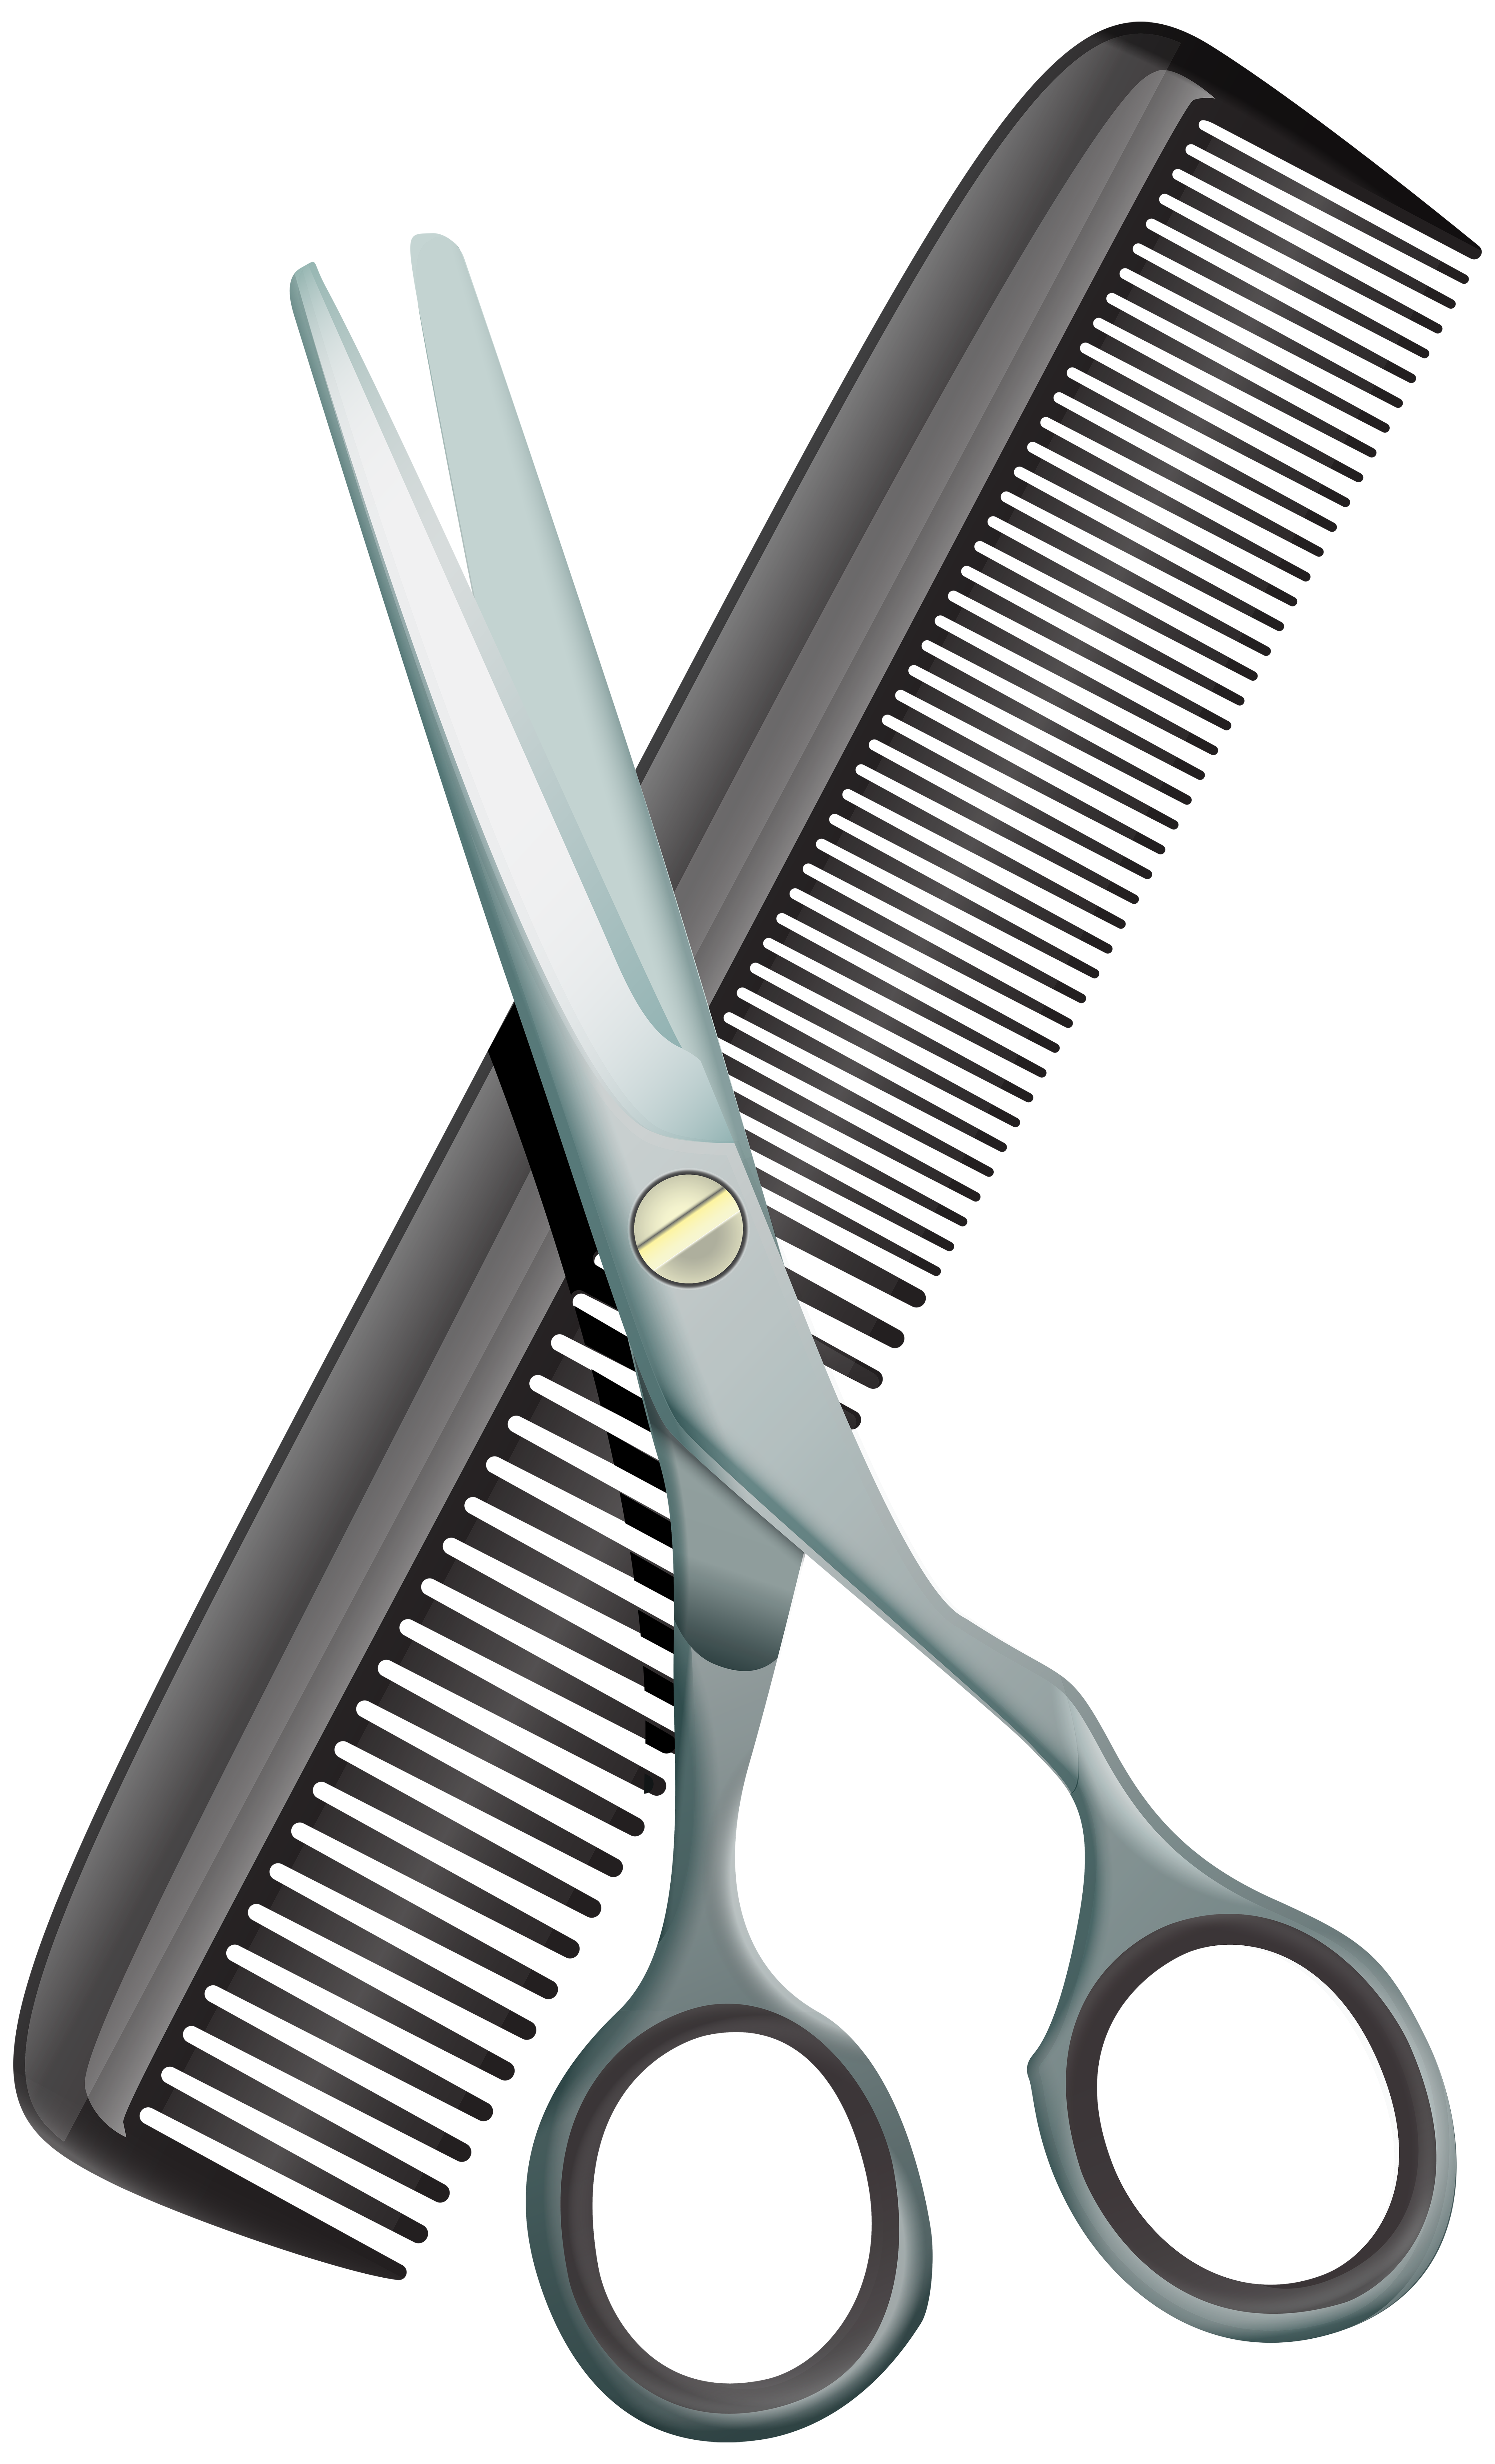 comb clipart tool